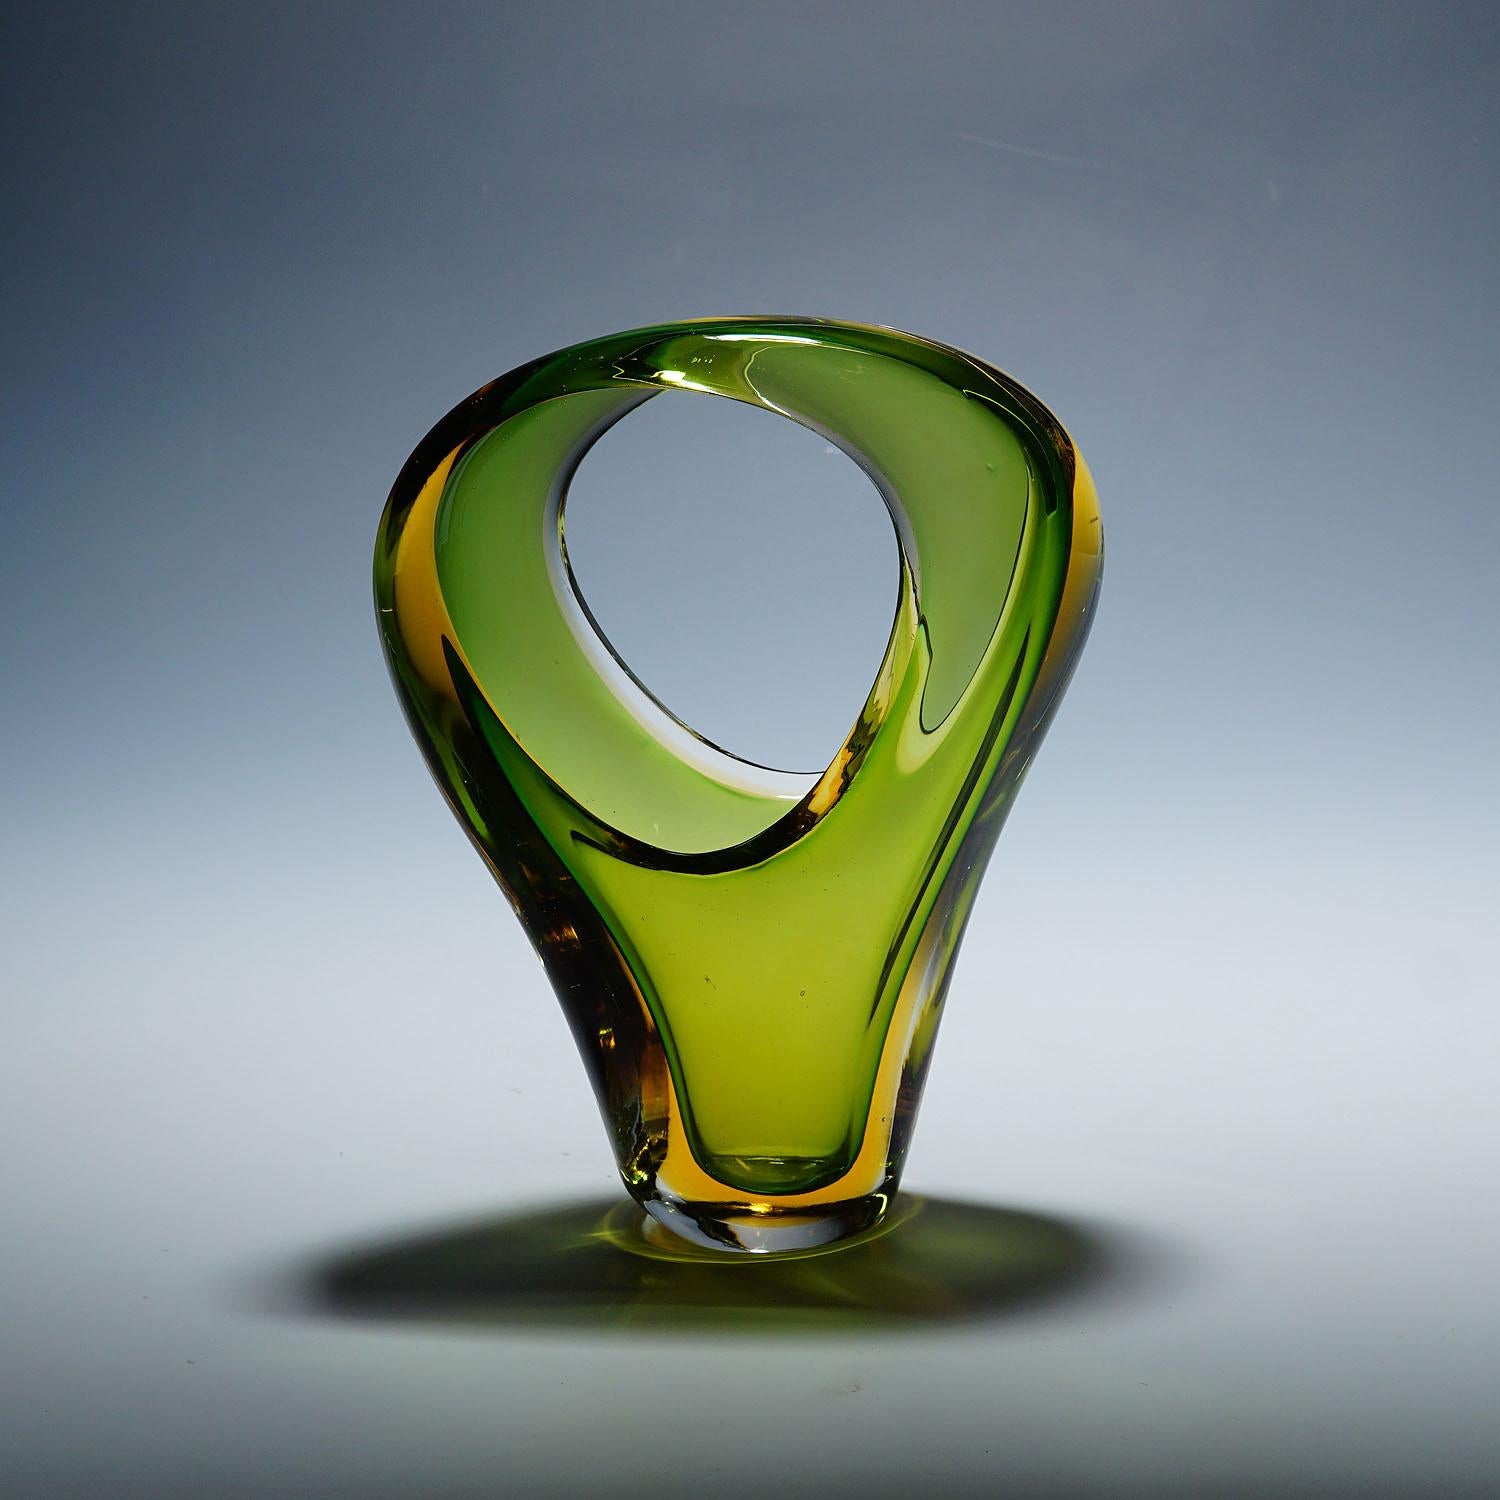 Archimede Seguso Sommerso-Korb in Grün und Bernstein, Murano, Italien ca. 1950er Jahre

Asymmetrischer Vintage-Glaskorb aus venezianischem Glas, entworfen von Archimede Seguso für die Vetreria Artistica Archimede Seguso, ca. 1950er Jahre.